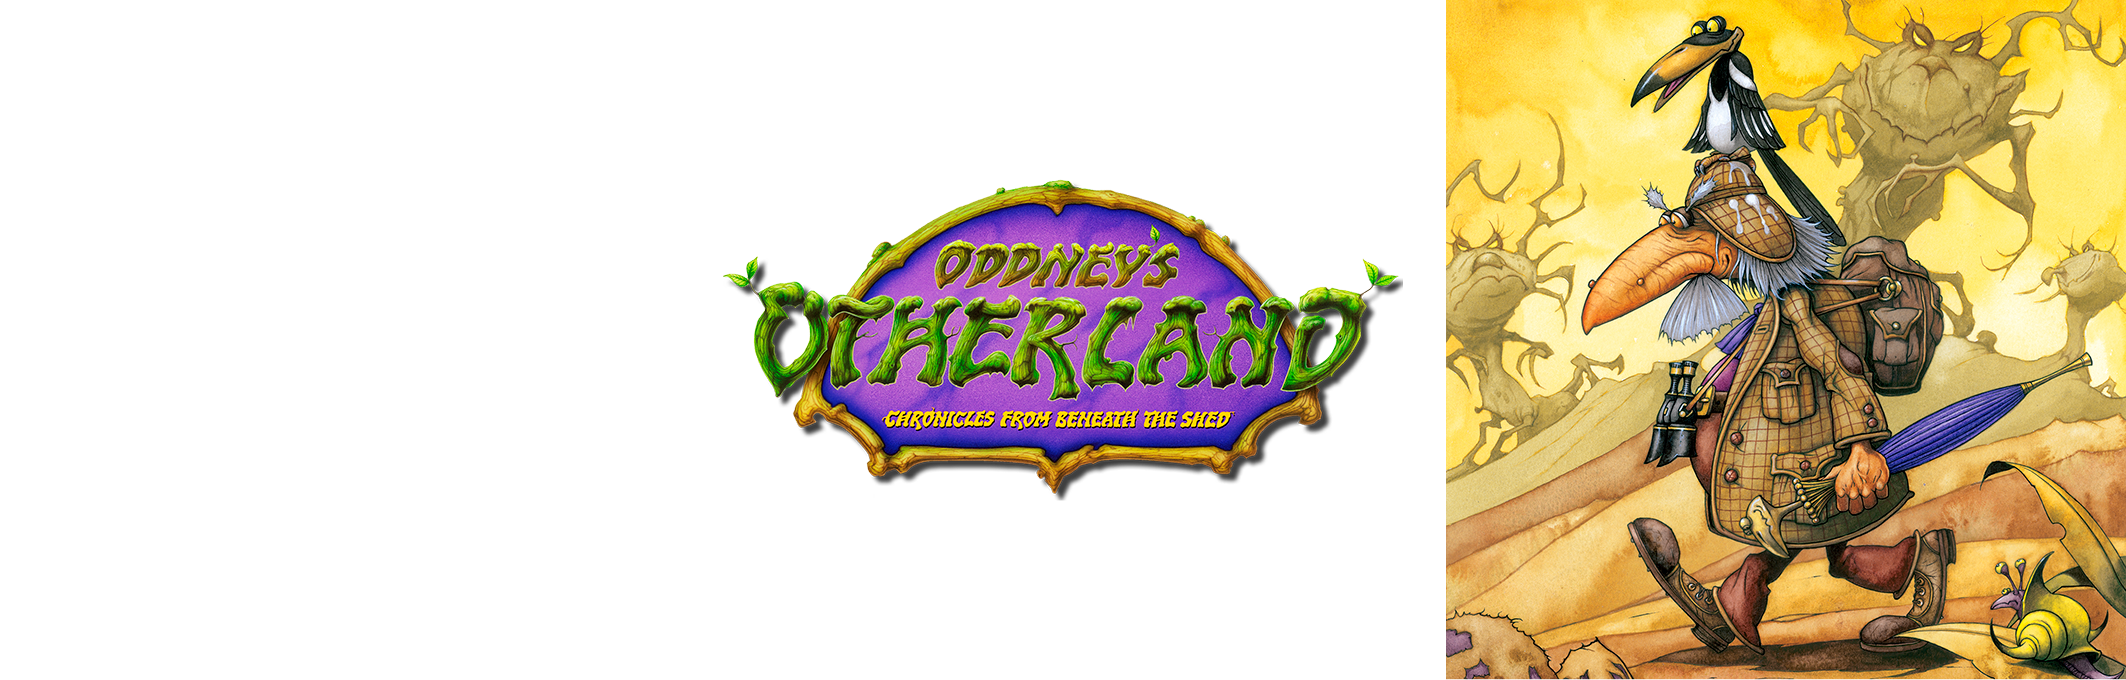 Oddney's Otherland © Rodney Matthews Studios